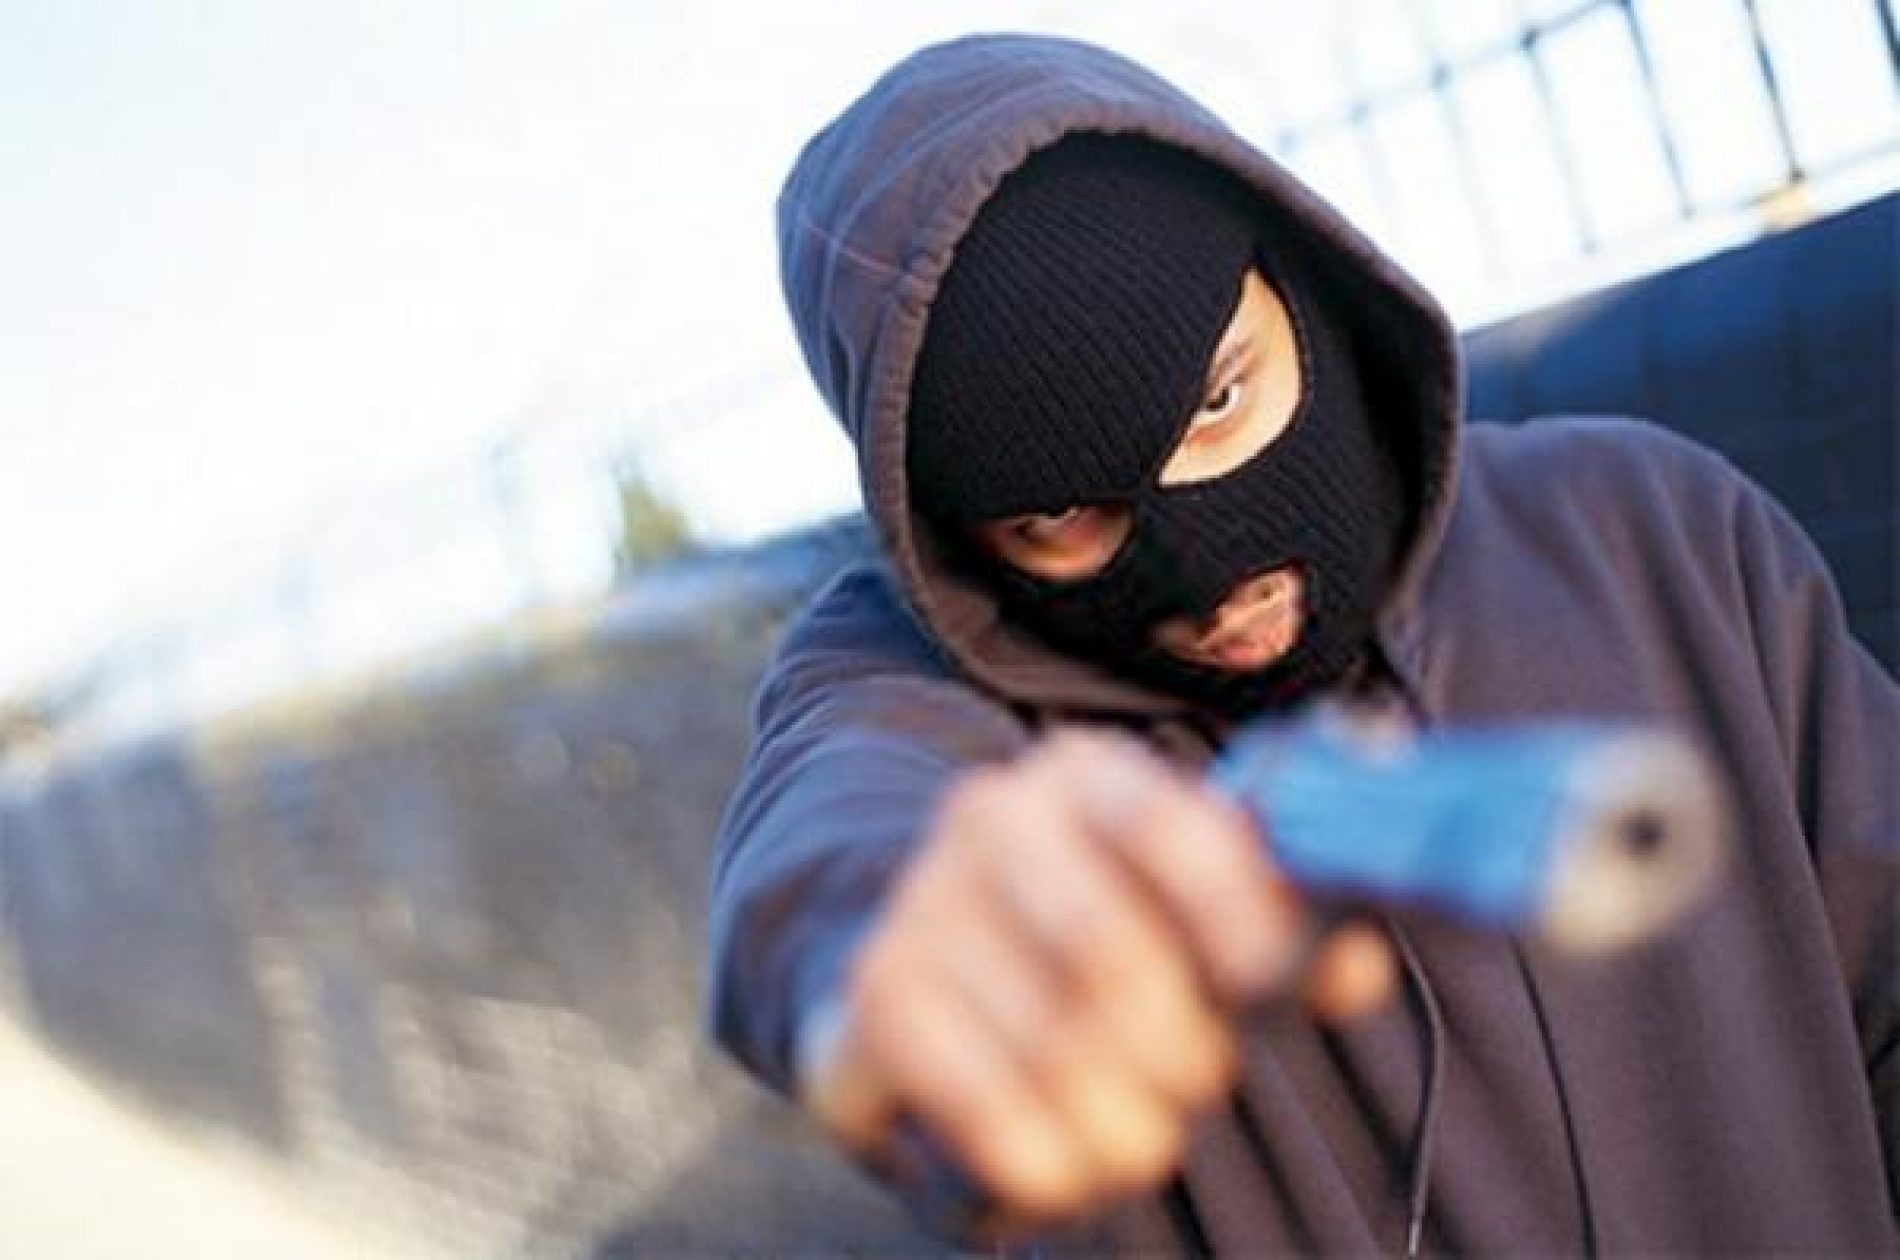 BARRETOS: Ladrões armados rendem famílias e tentam roubar trator em propriedade rural